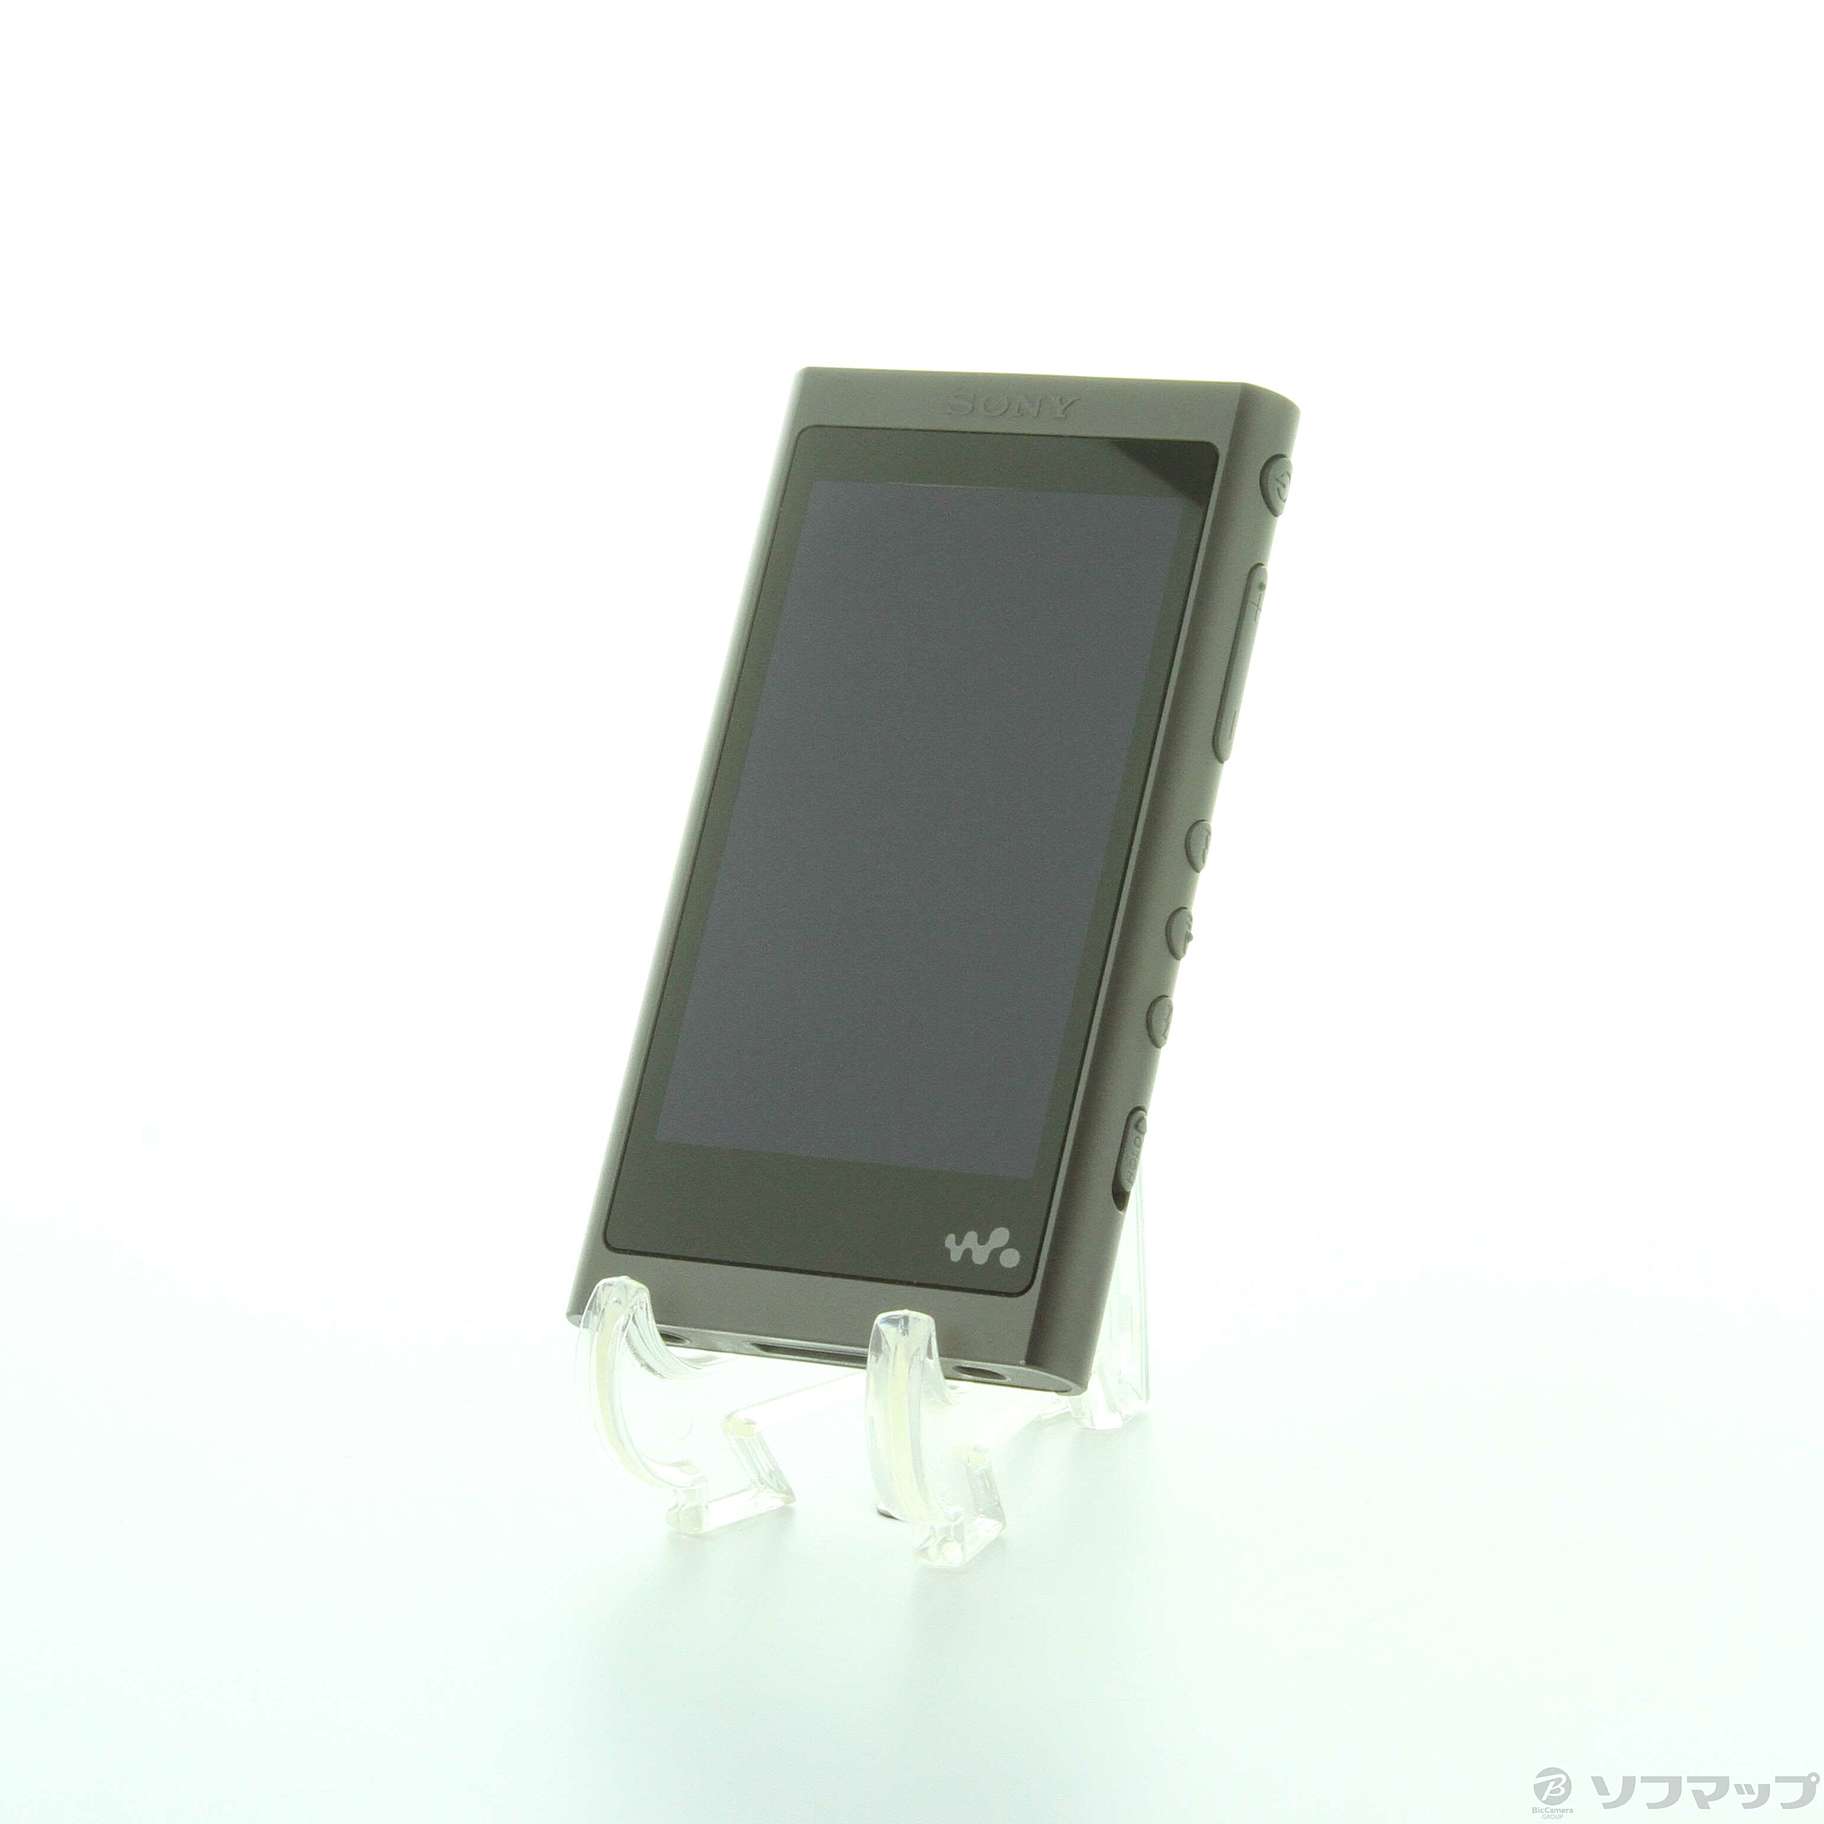 SONY ウォークマン NW-A55 16GB グレイッシュブラック